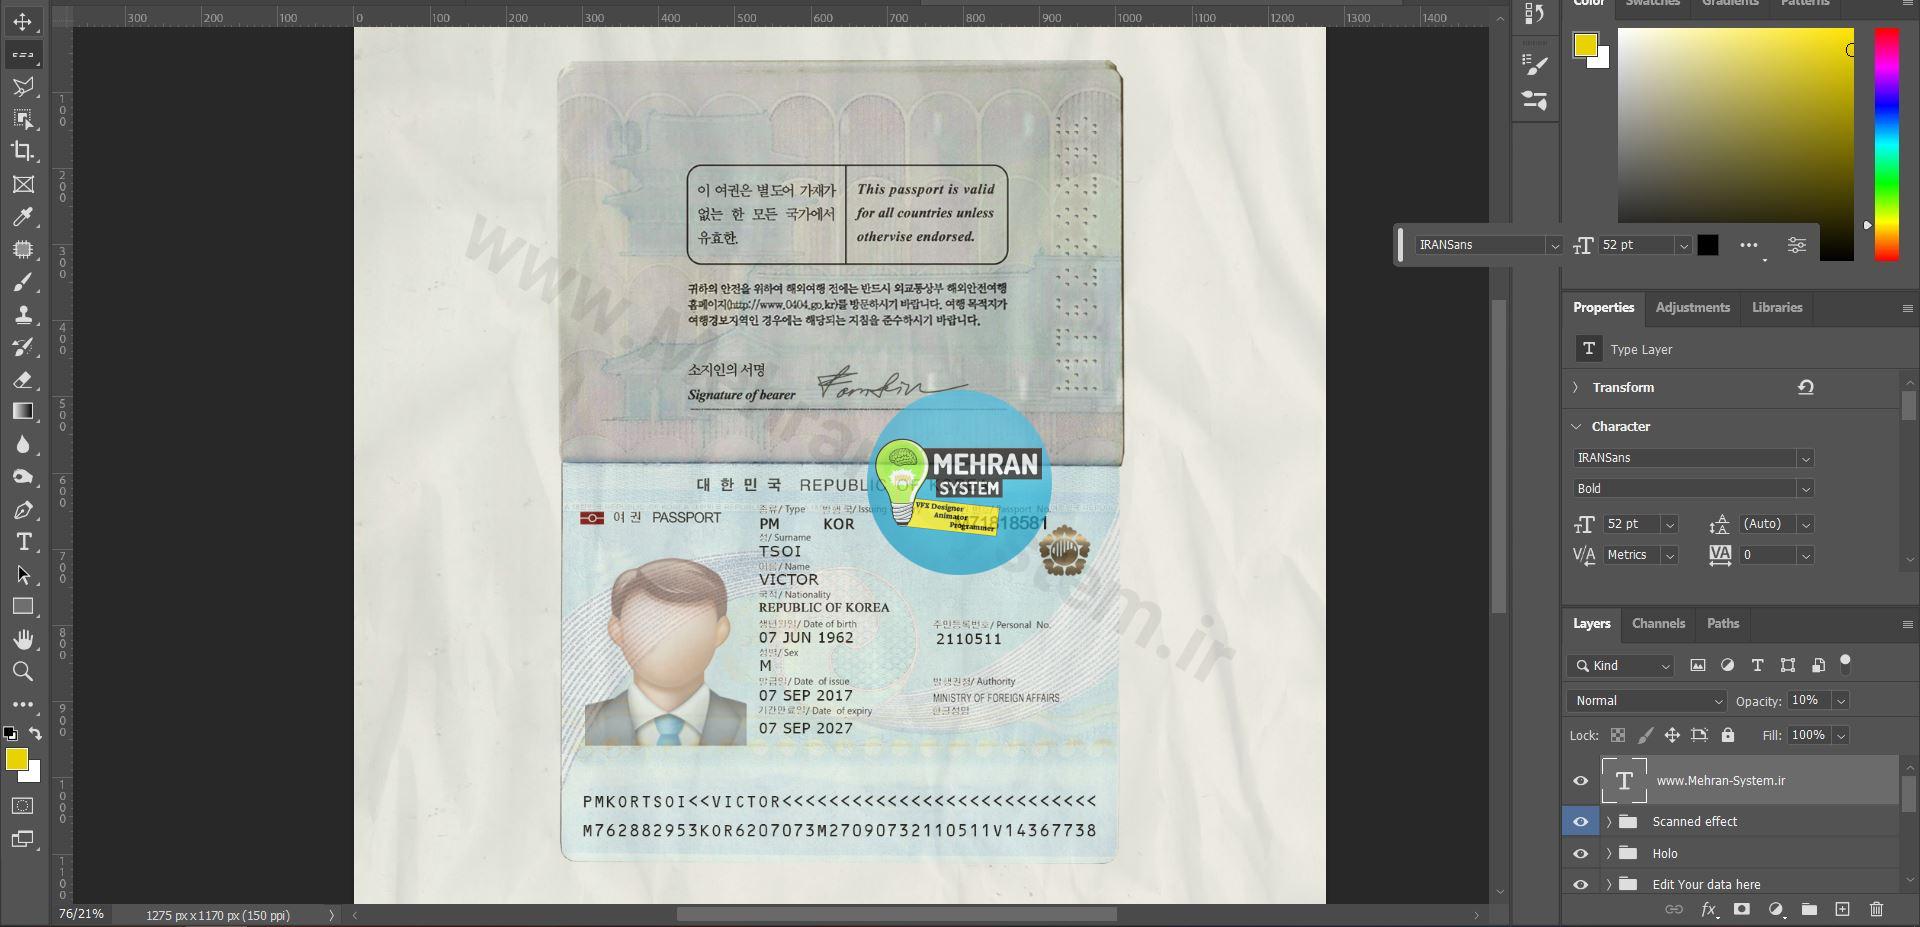 پاسپورت لایه باز کره جنوبی